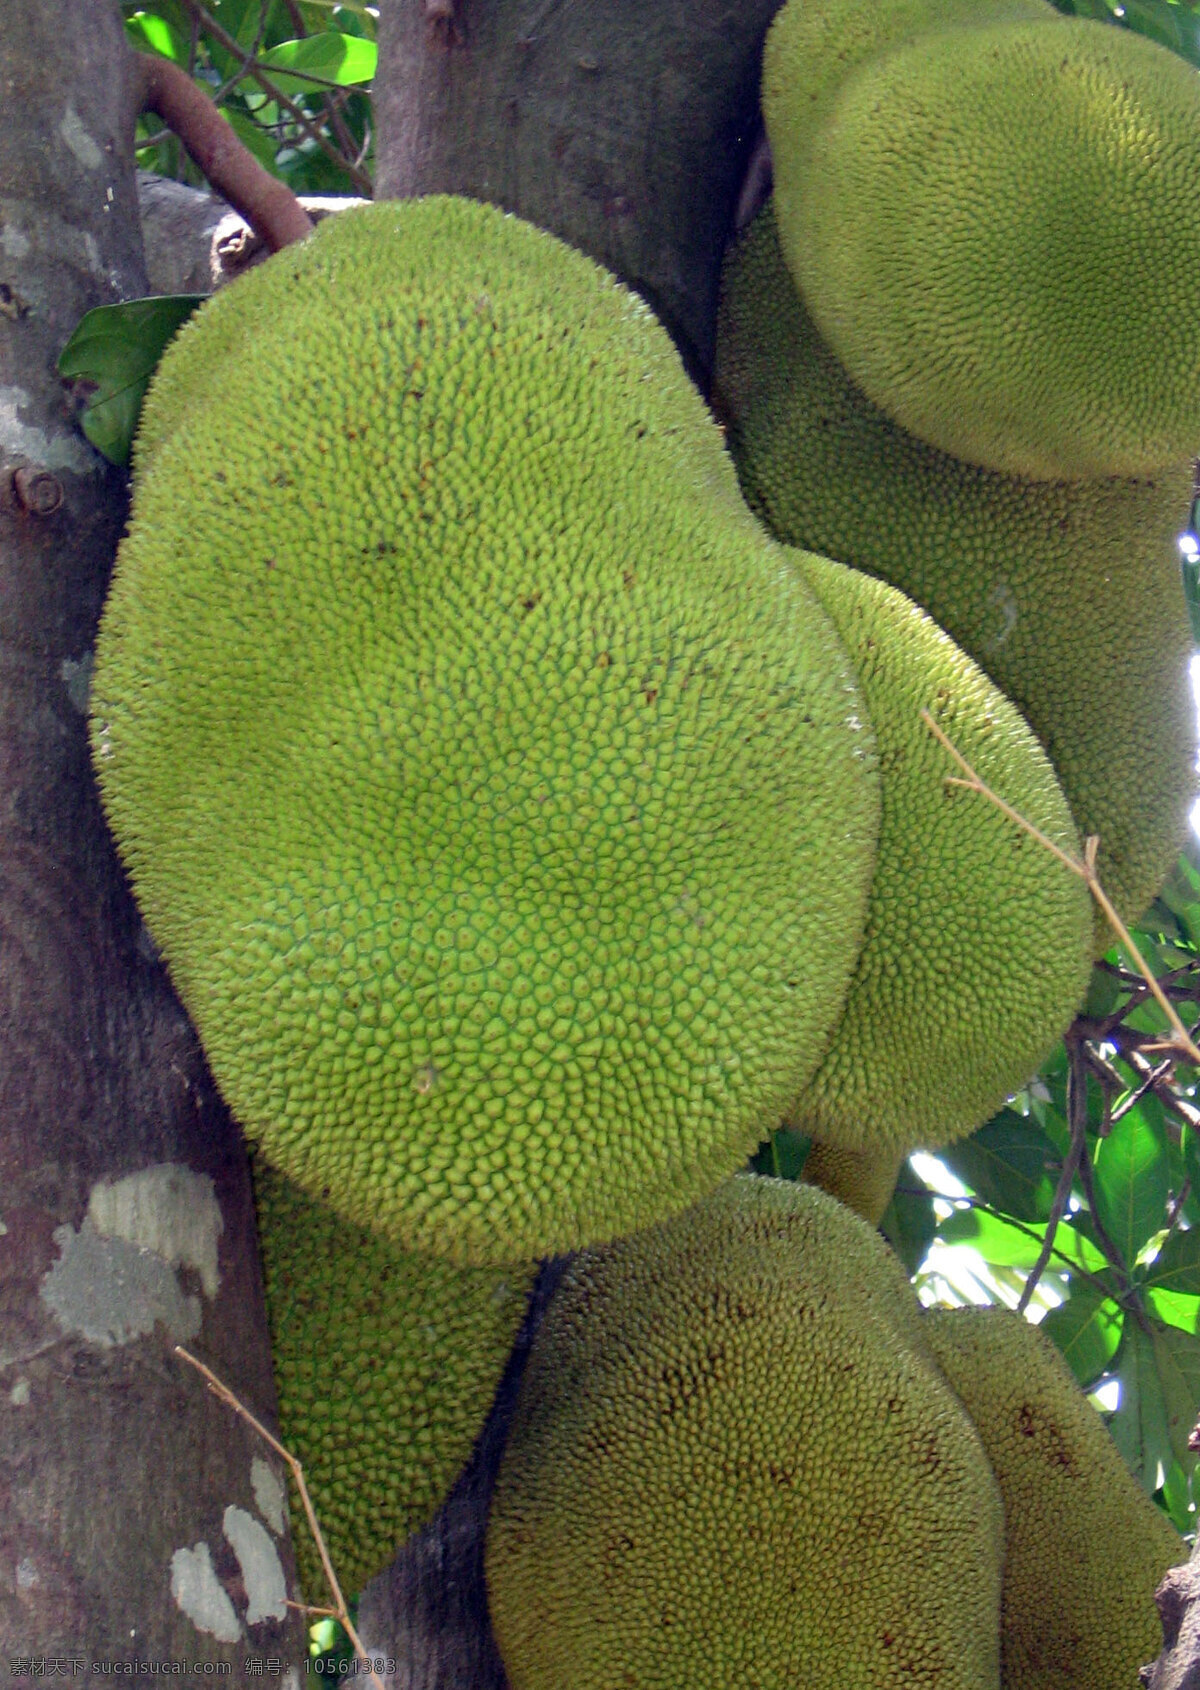 菠萝蜜 海南 三亚 大树菠萝 菠萝蜜树 植物 水果树 水果 生物世界 热带水果